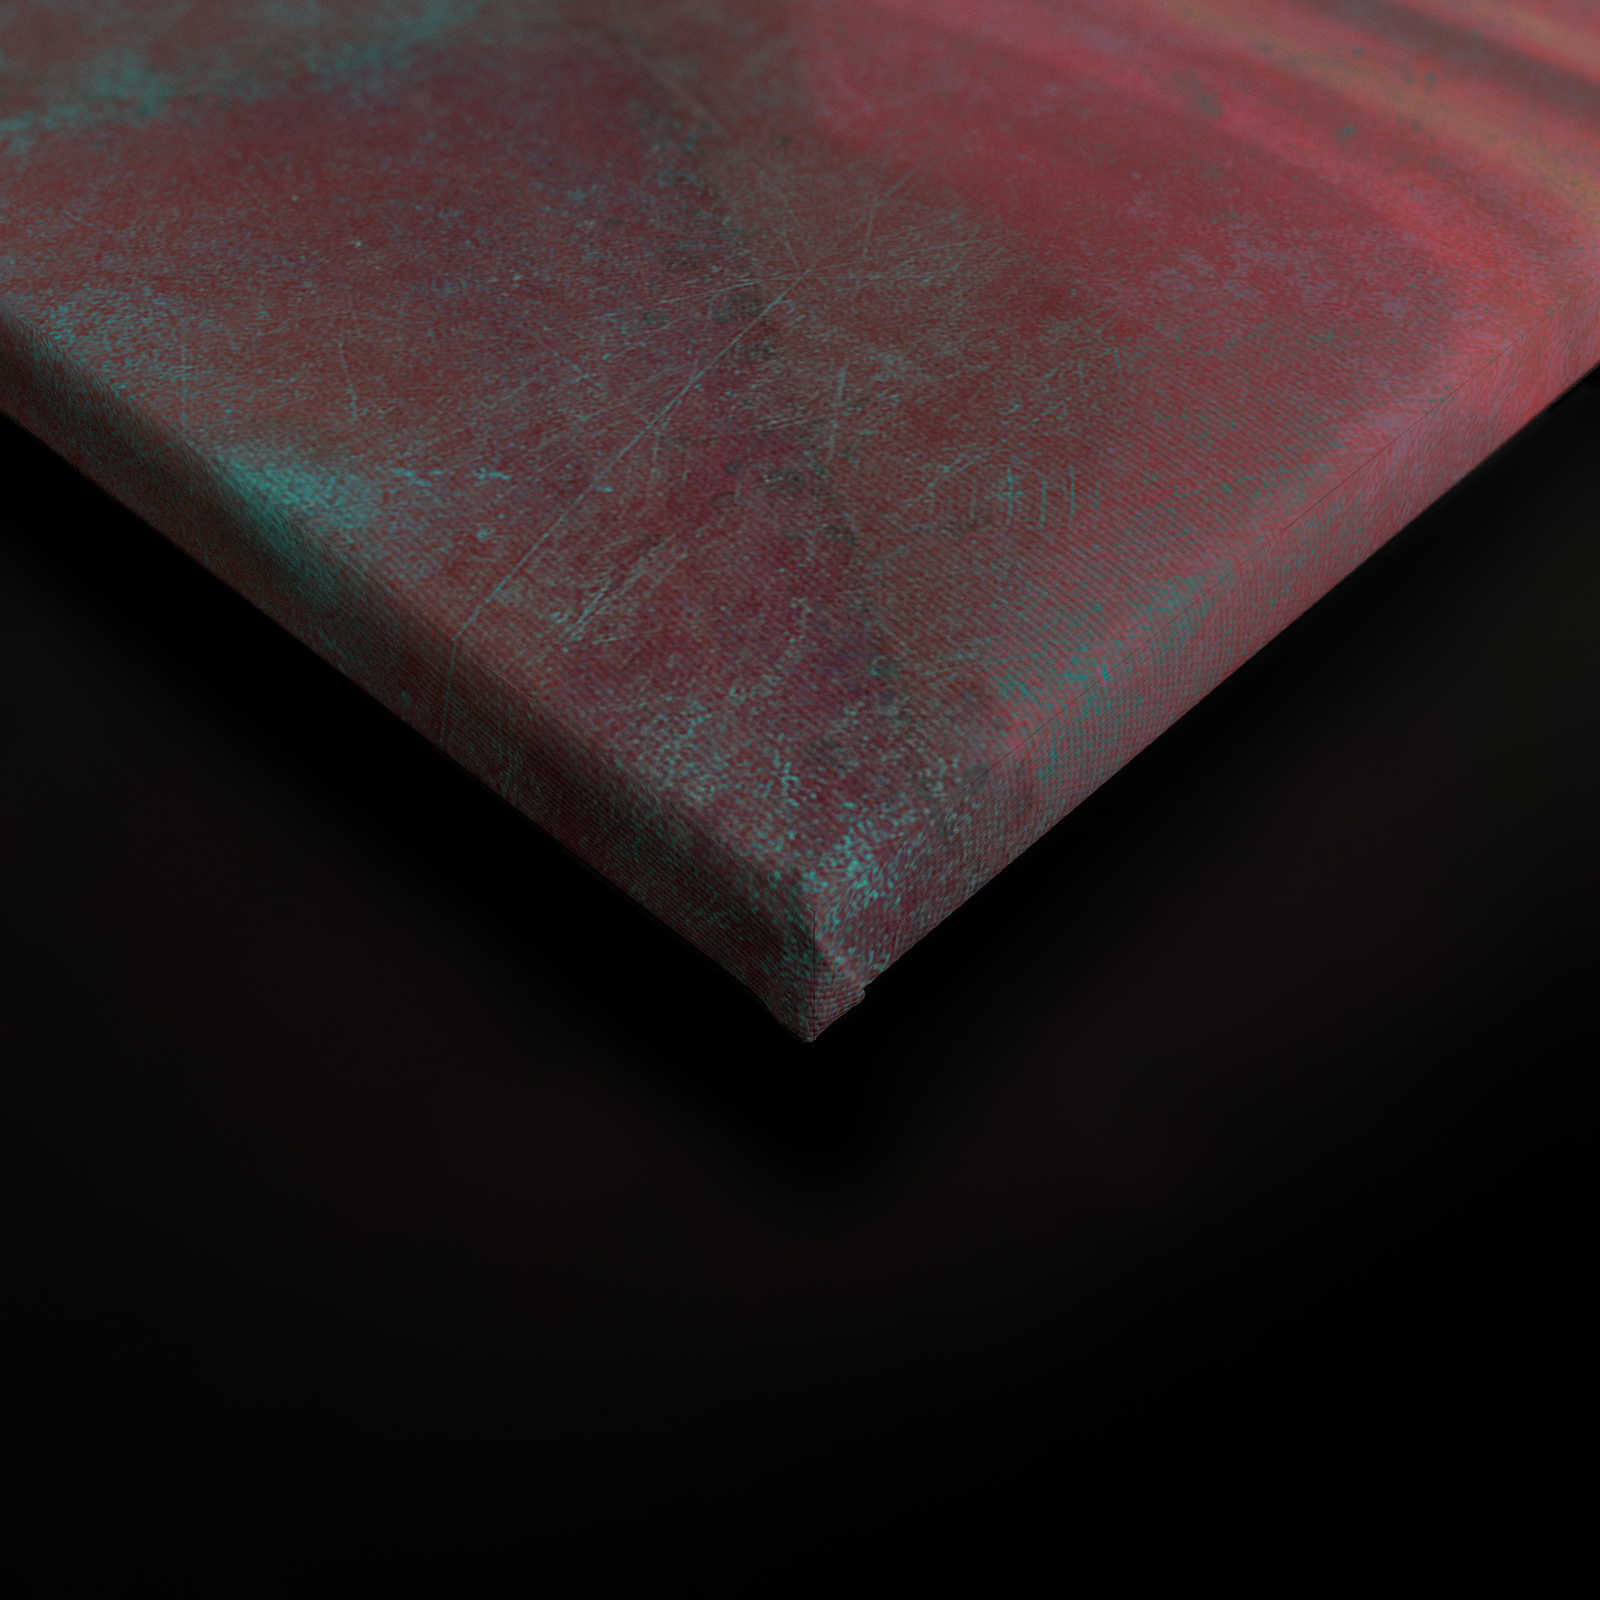             Mármol 1 - Mármol de colores como cuadro de lienzo de realce con estructura rayada - 0,90 m x 0,60 m
        